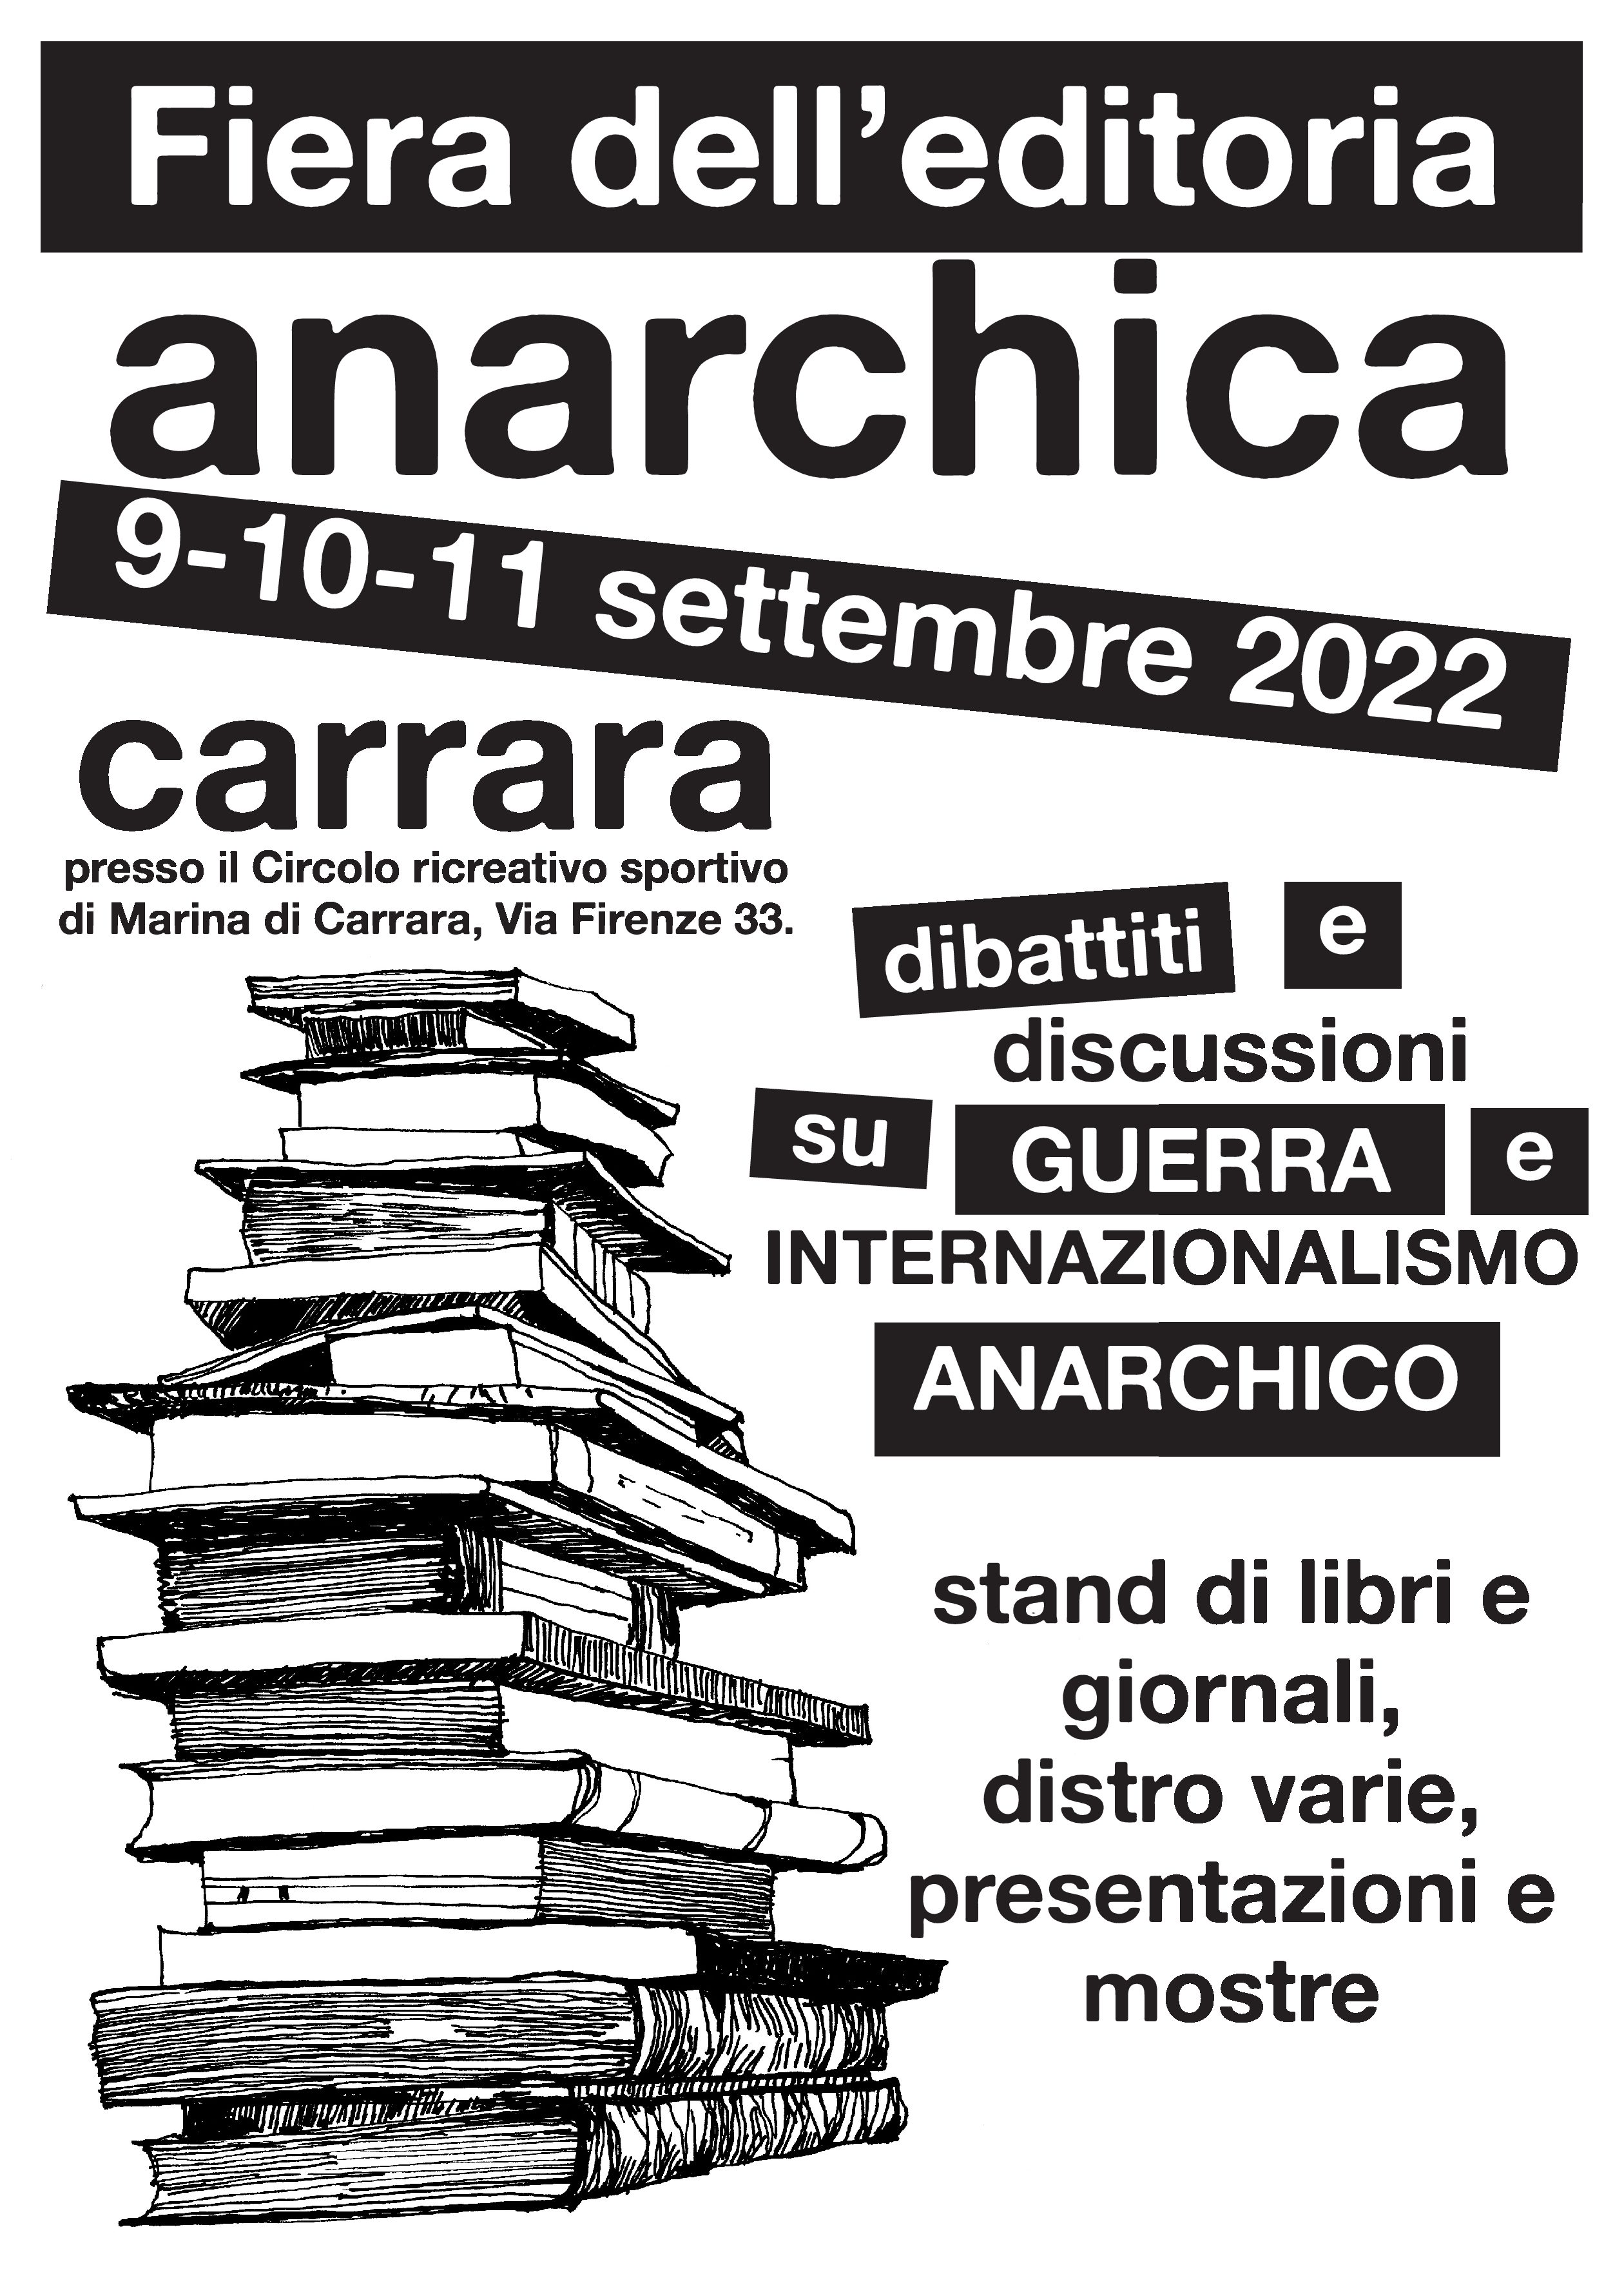 Carrara, 9, 10 e 11 settembre: fiera dell’editoria anarchica